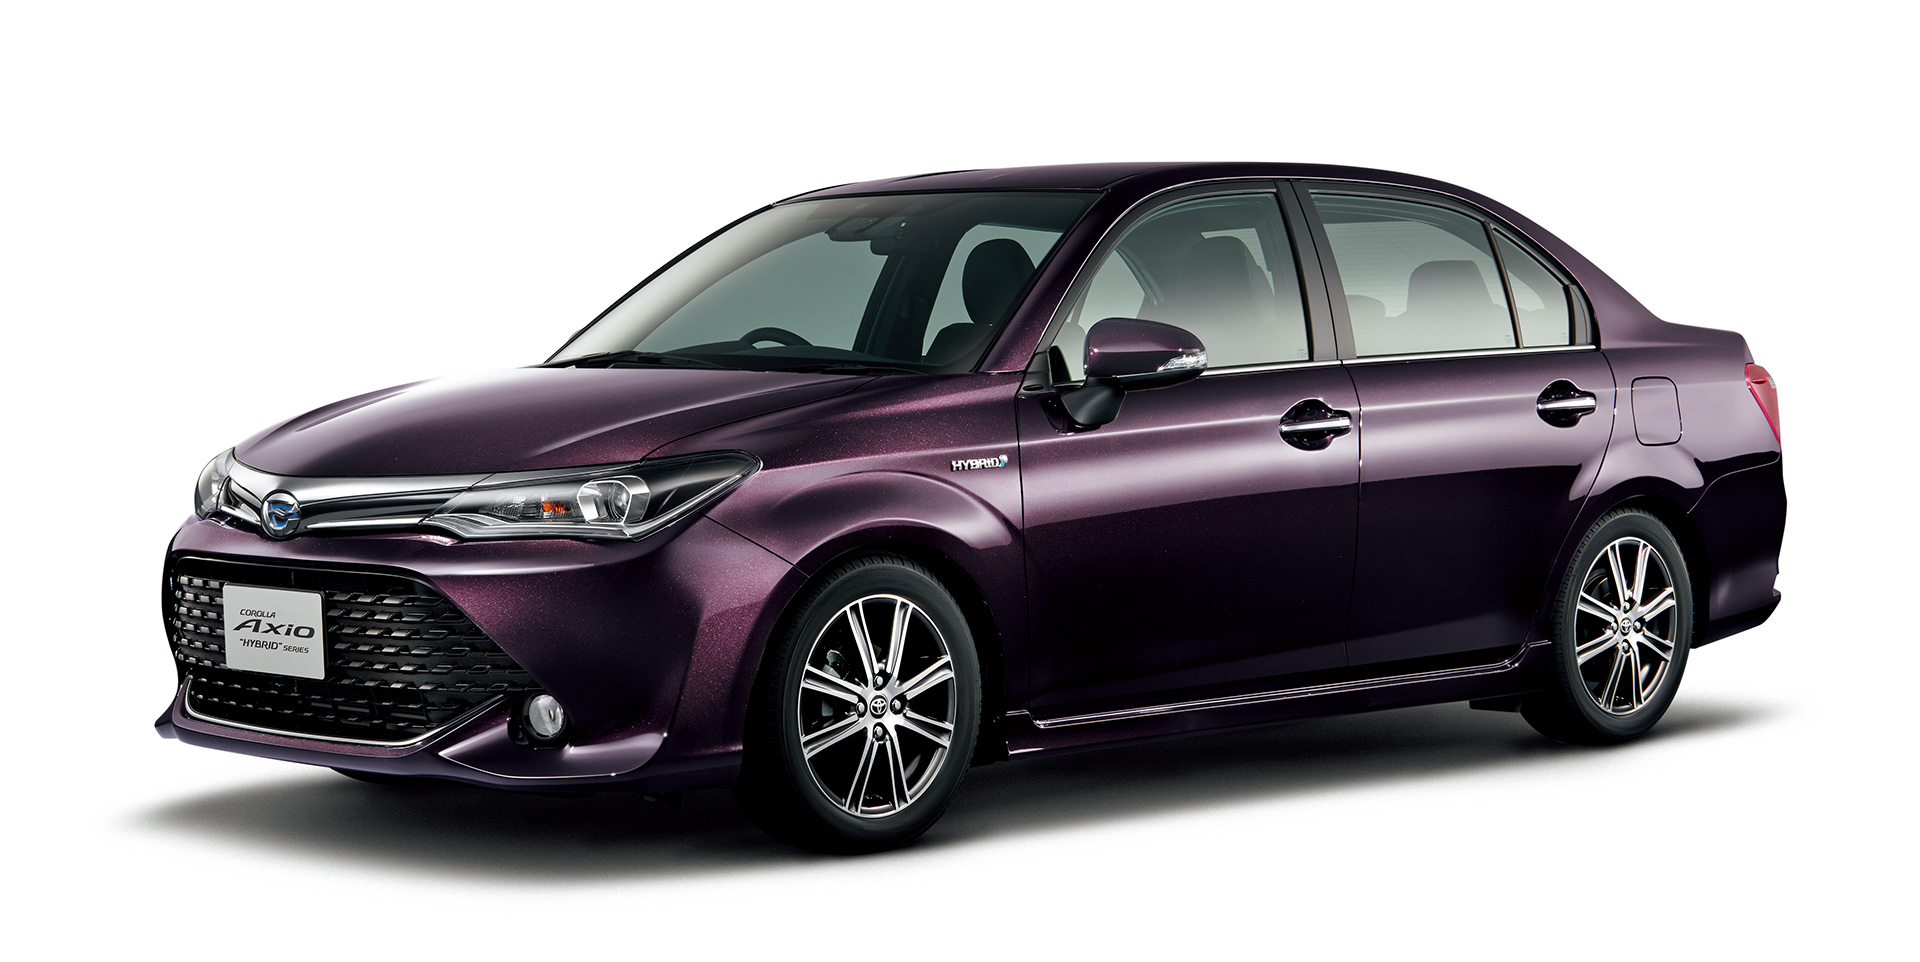 Generasi Terbaru Toyota Corolla Dirilis Maret 2018